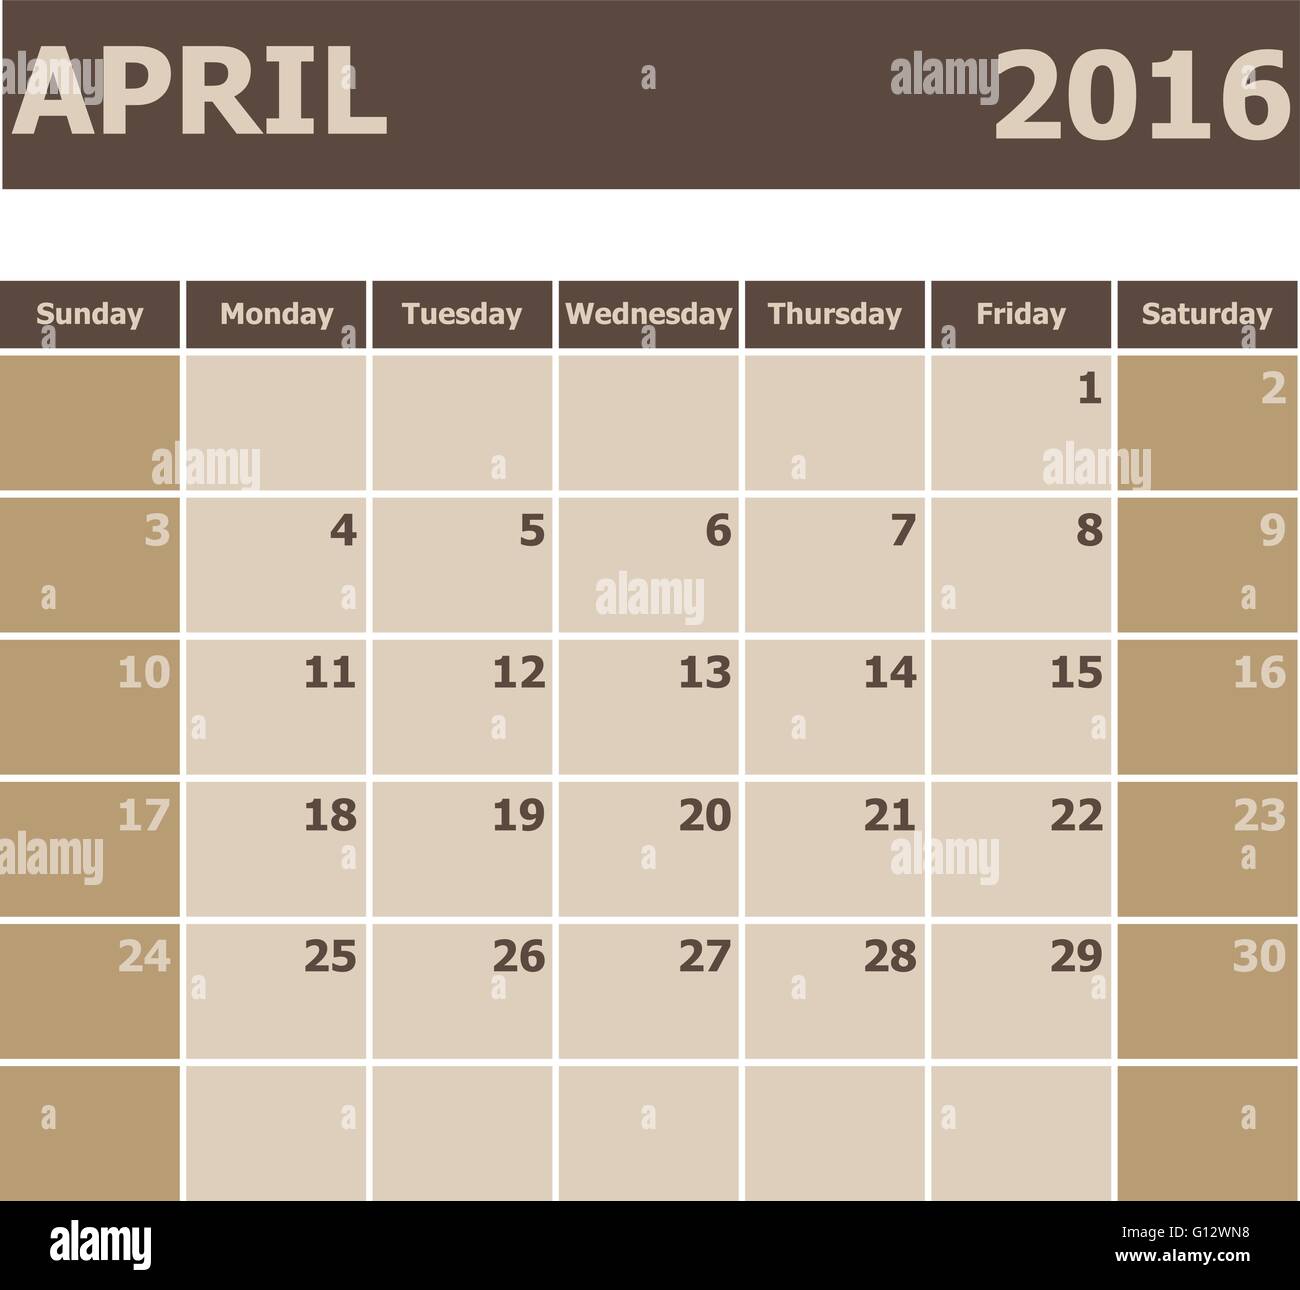 Kalender April 2016, Woche ab Sonntag, Lager Vektor Stock Vektor